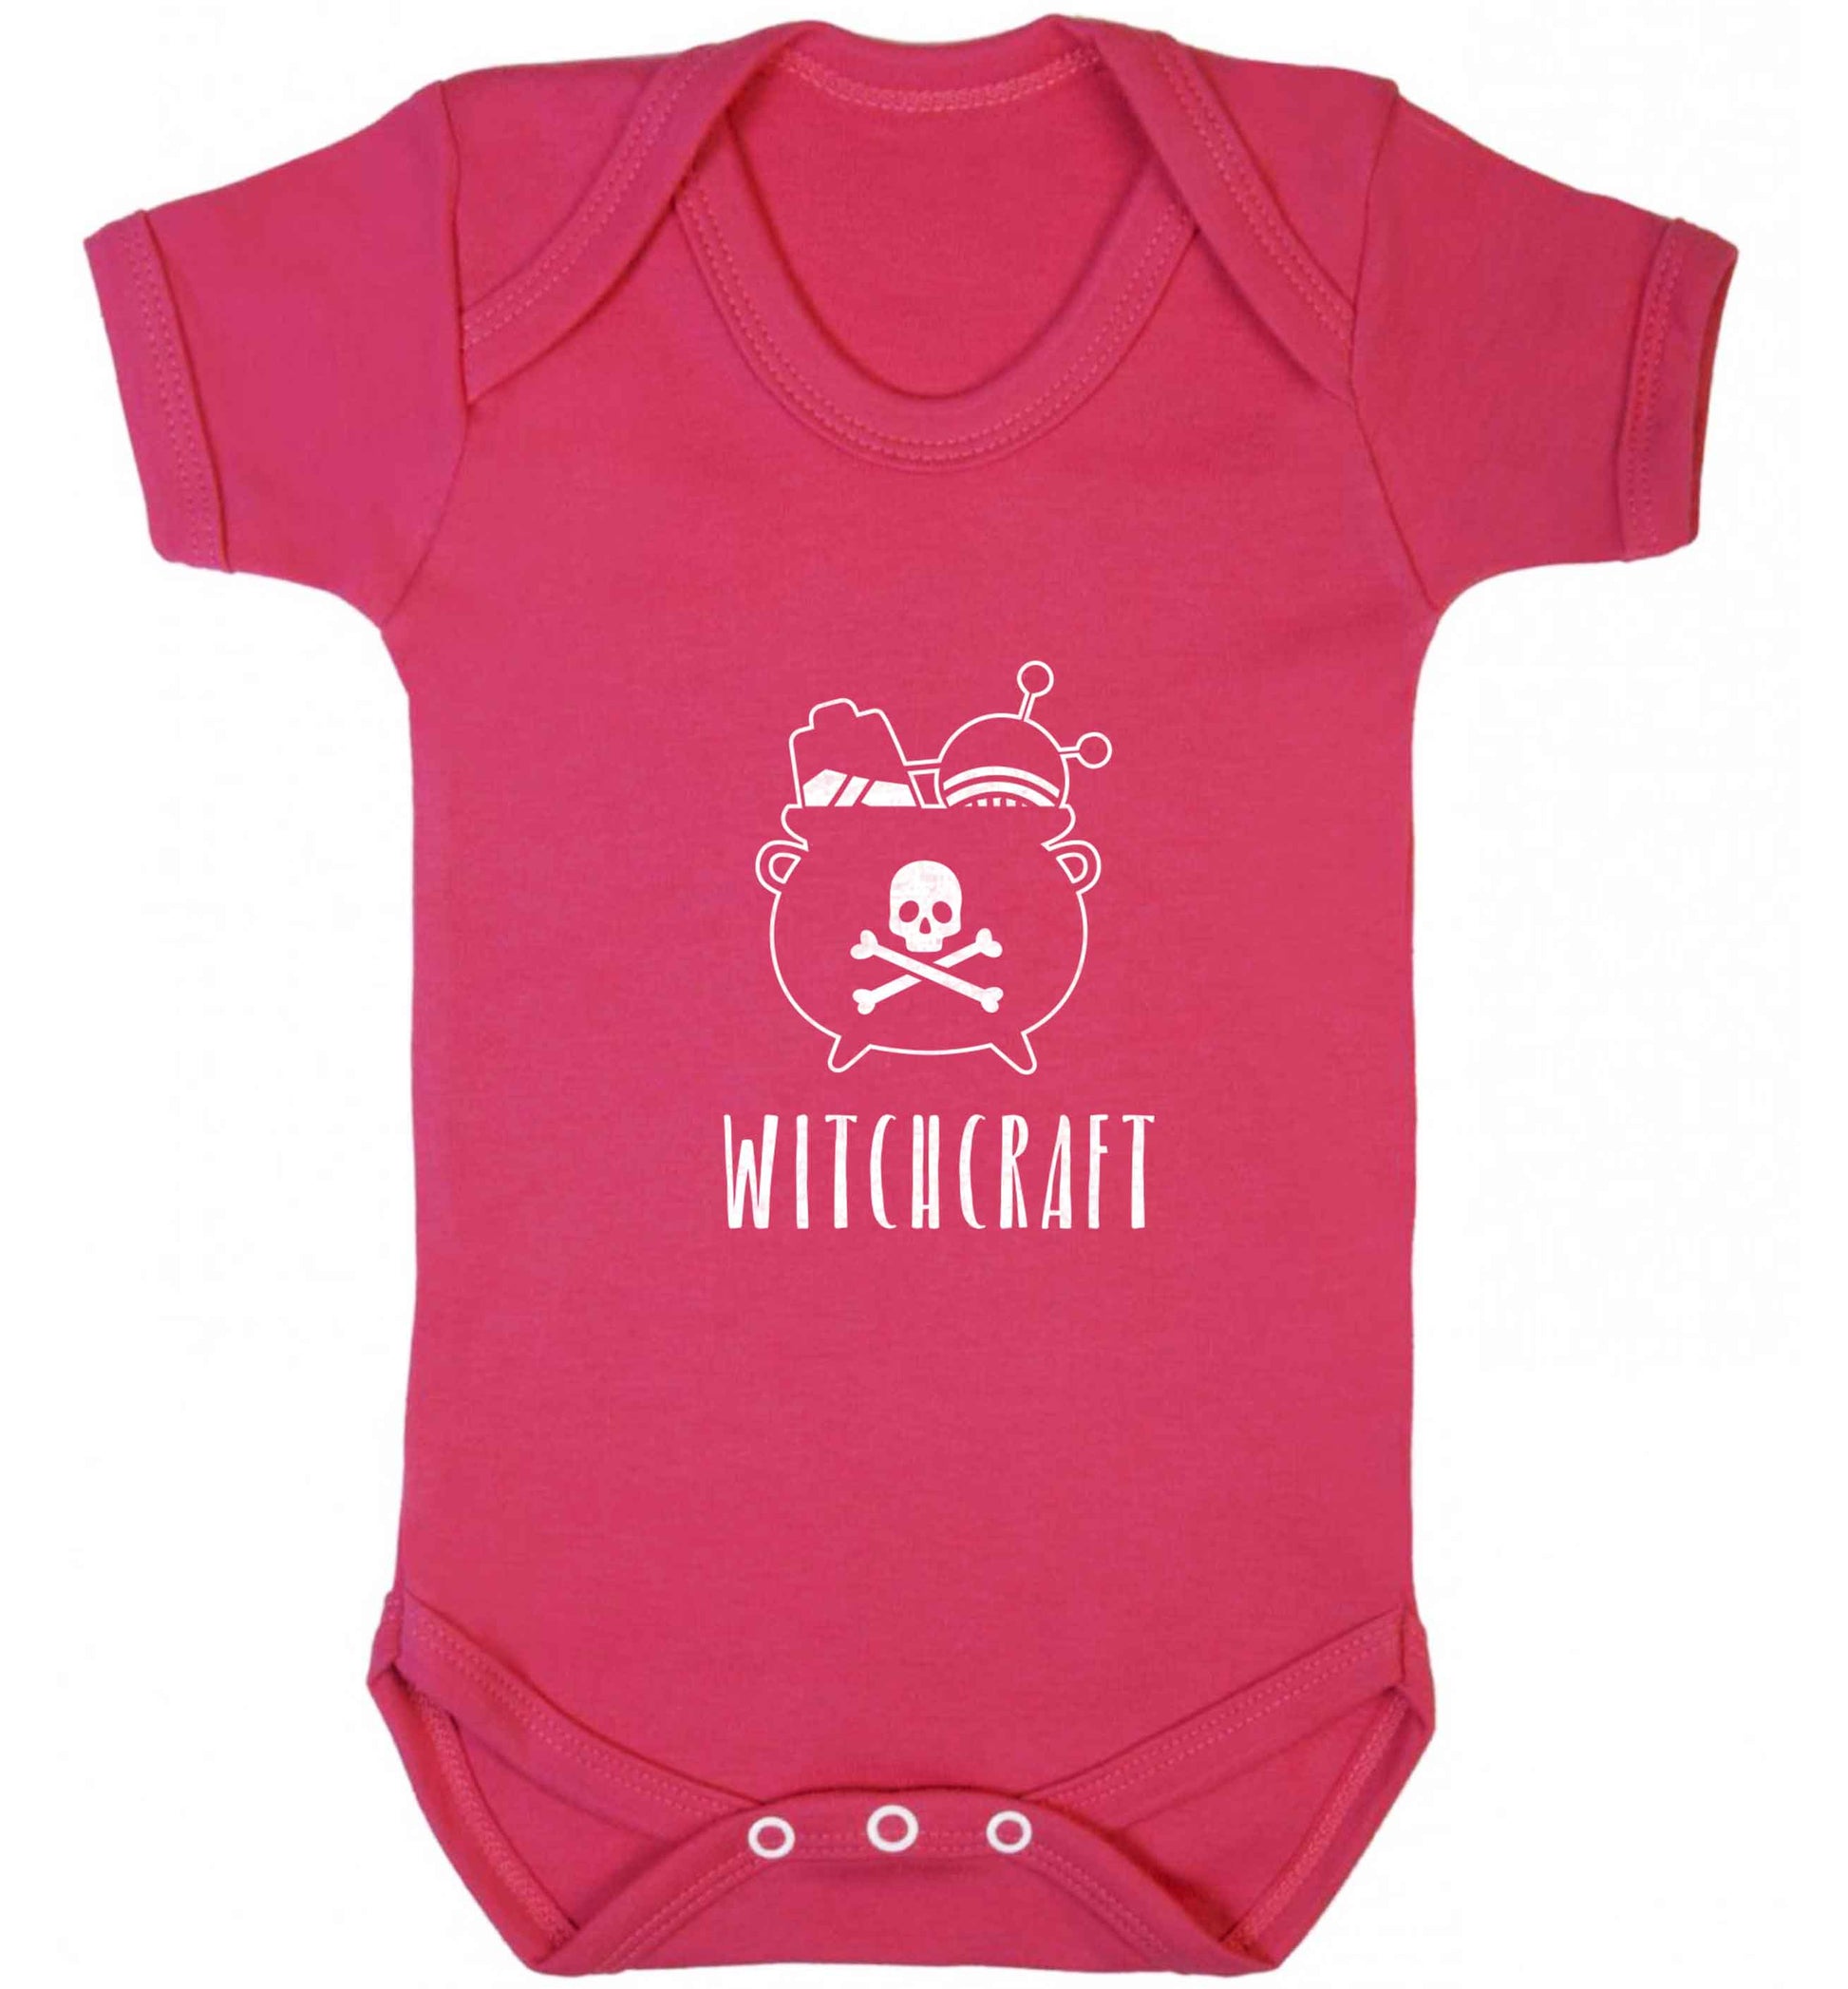 Witchcraft baby vest dark pink 18-24 months